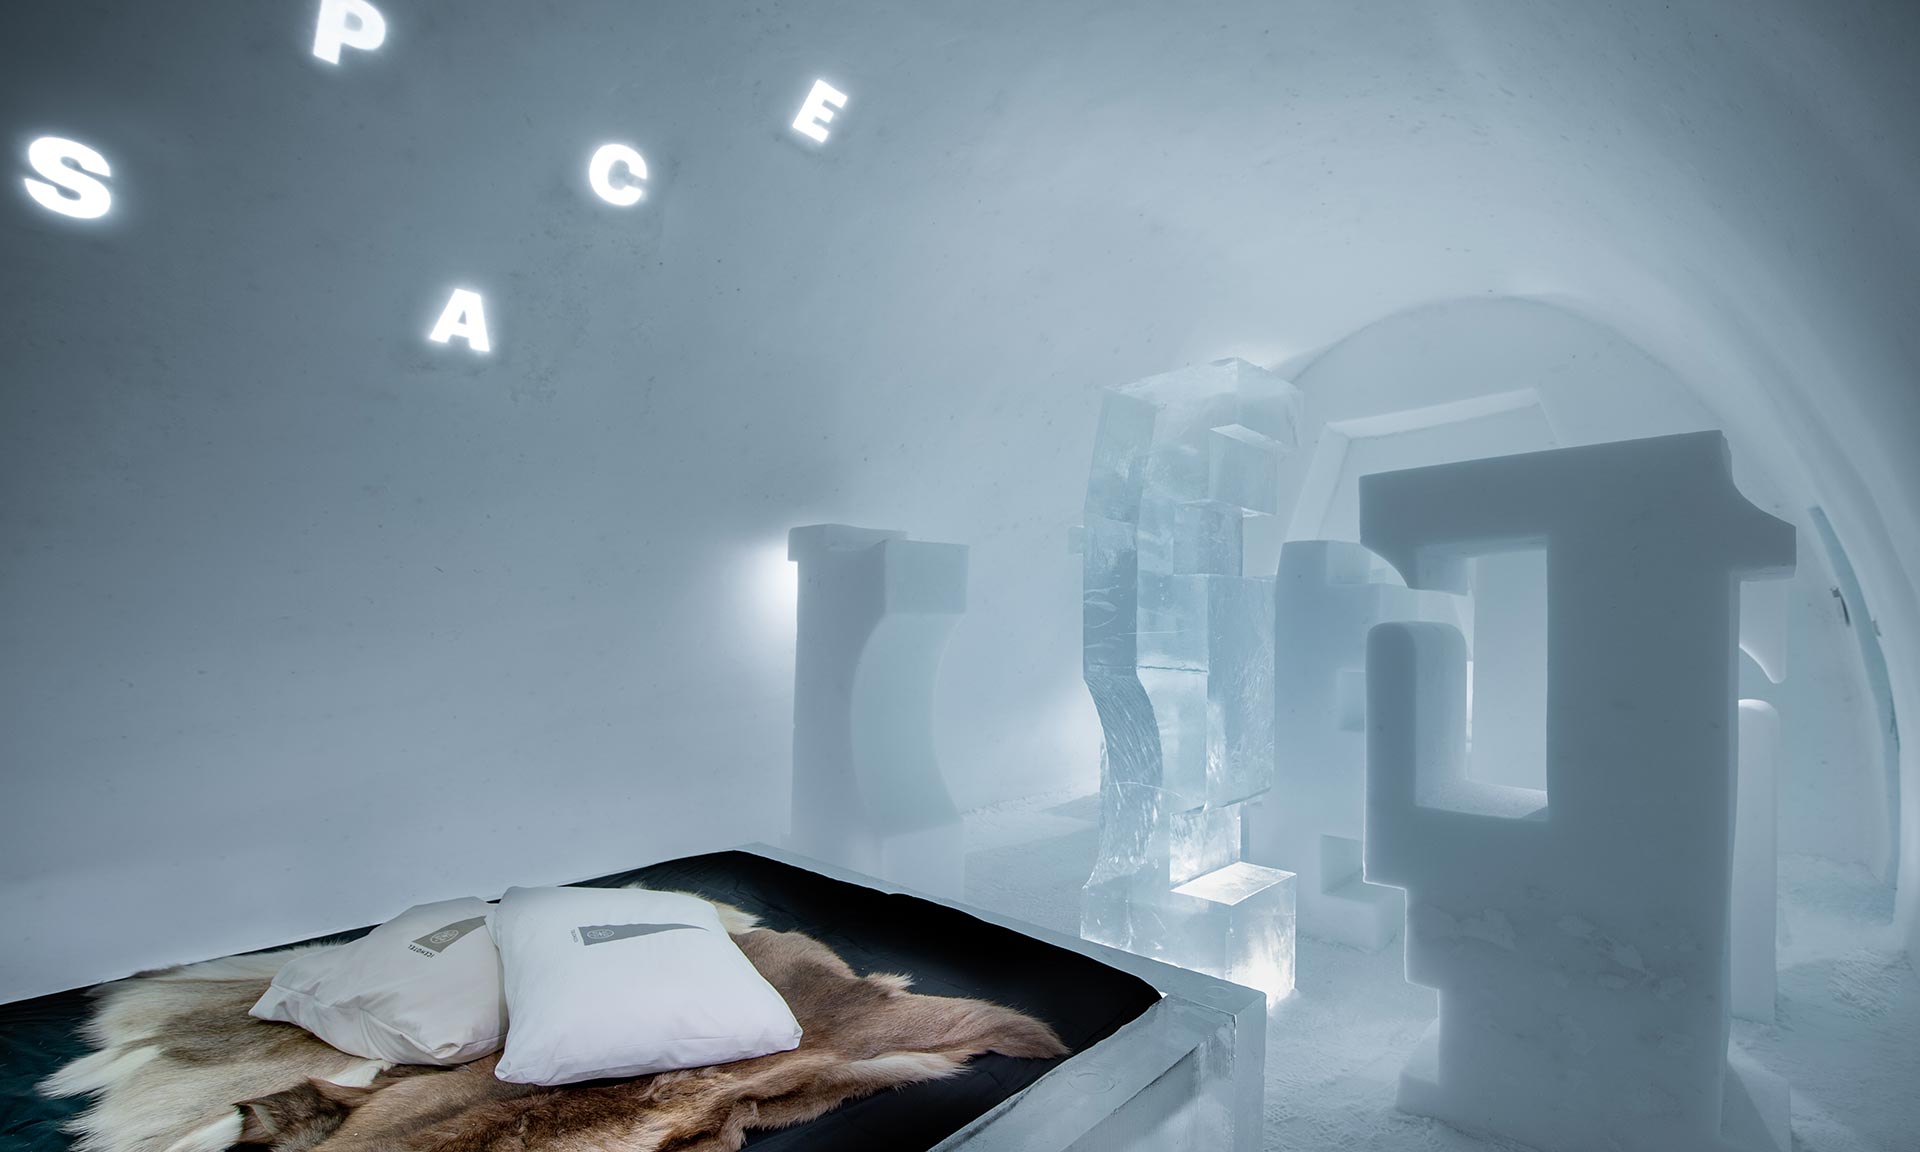 IceHotel se po roce otevřel s 12 pokoji včetně ledové sauny a obřadní síně